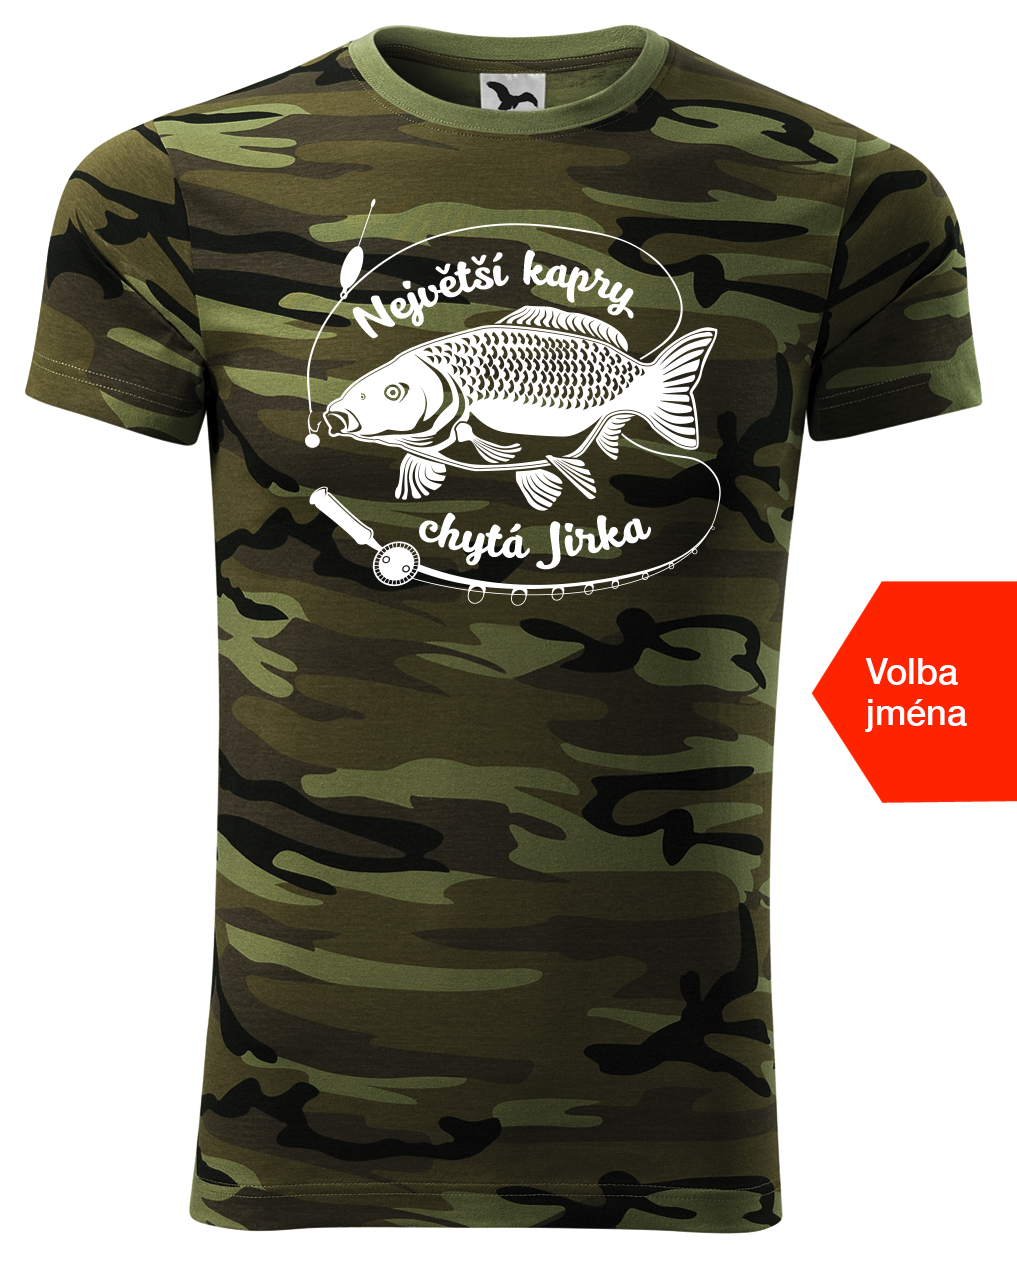 Pánské rybářské maskáčové tričko - Největší kapry chytá Velikost: M, Barva: Maskáčová